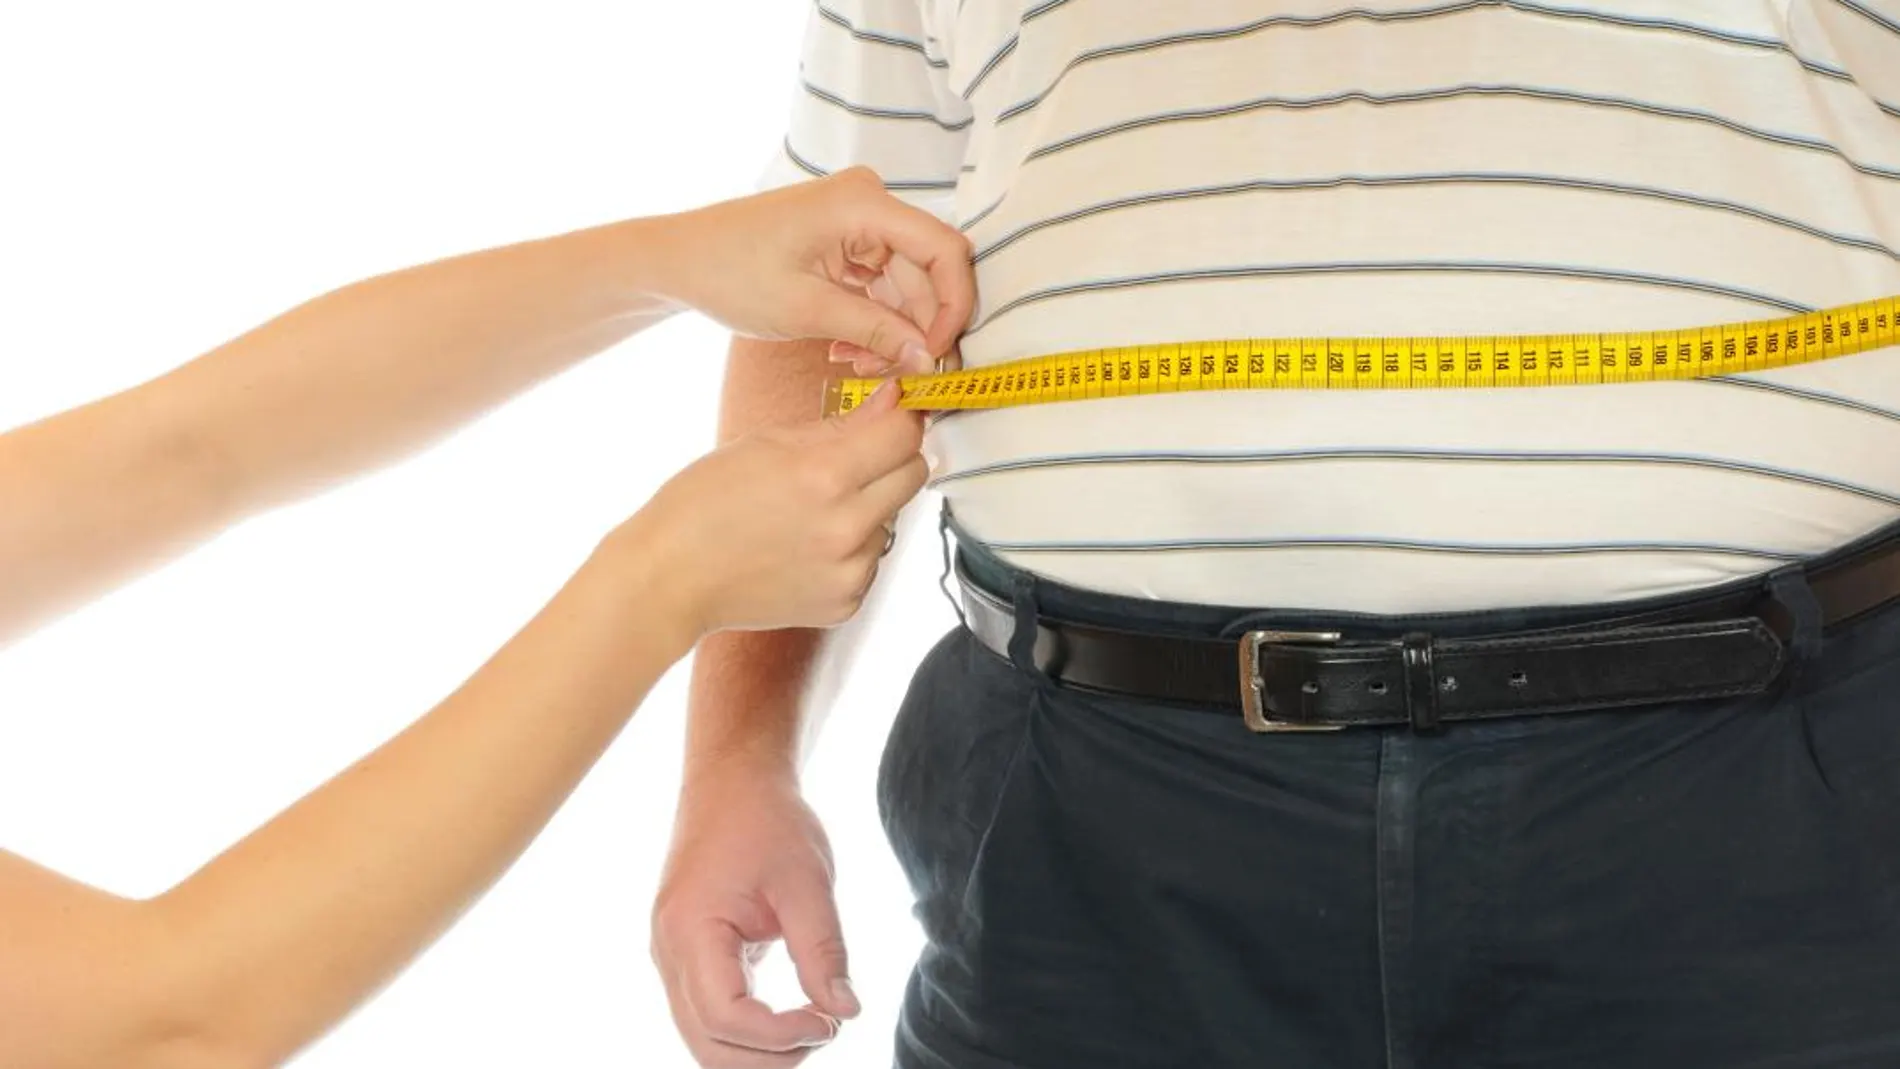 Se estima que en 2030 en España habrá 27,2 millones de adultos con exceso de peso